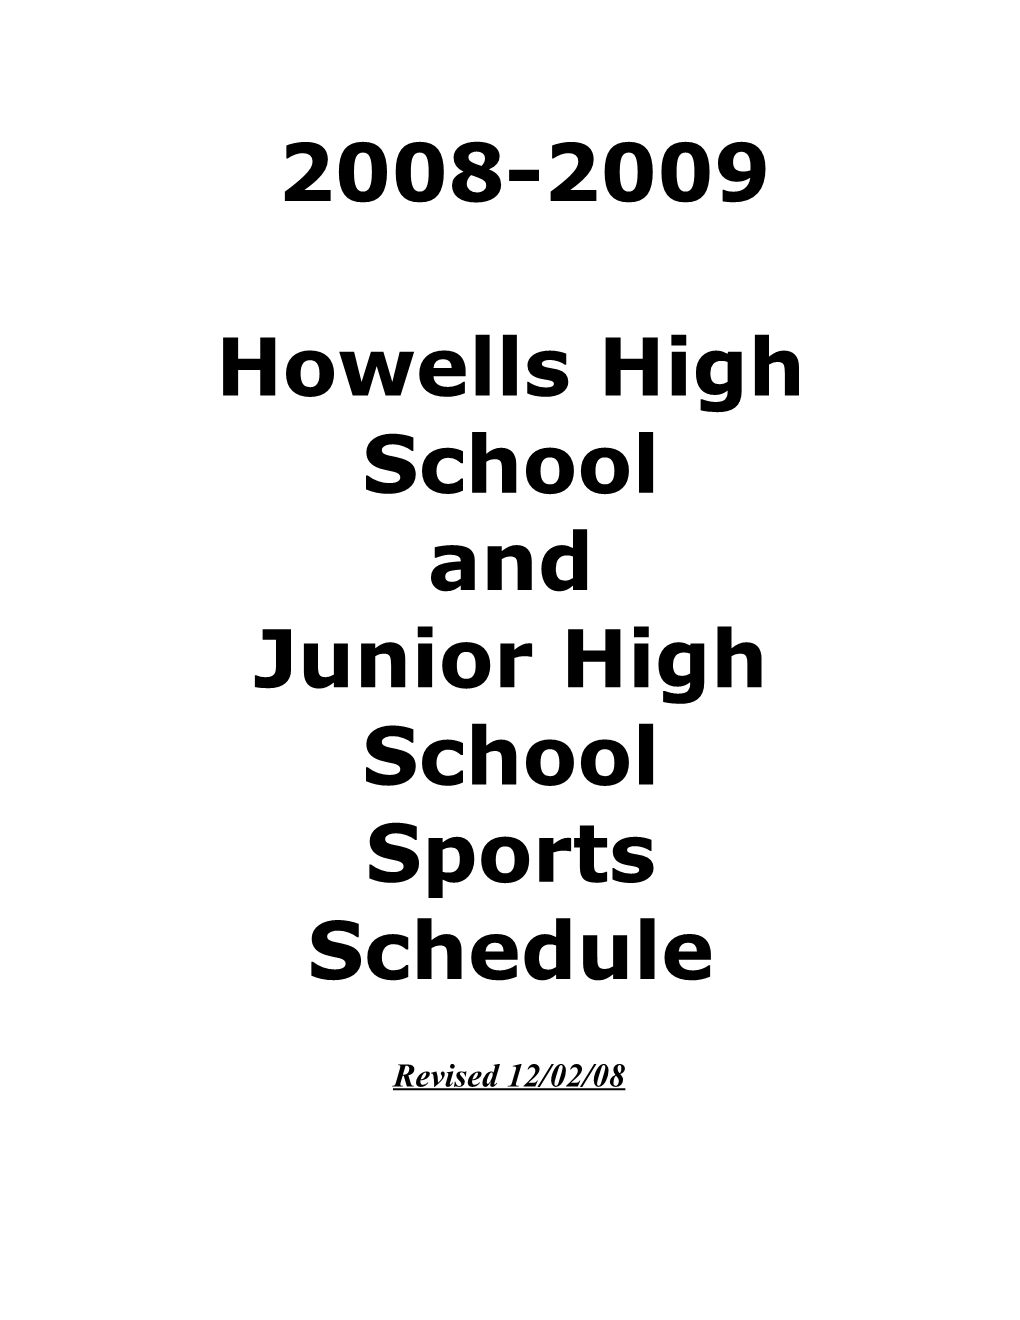 Howells High School